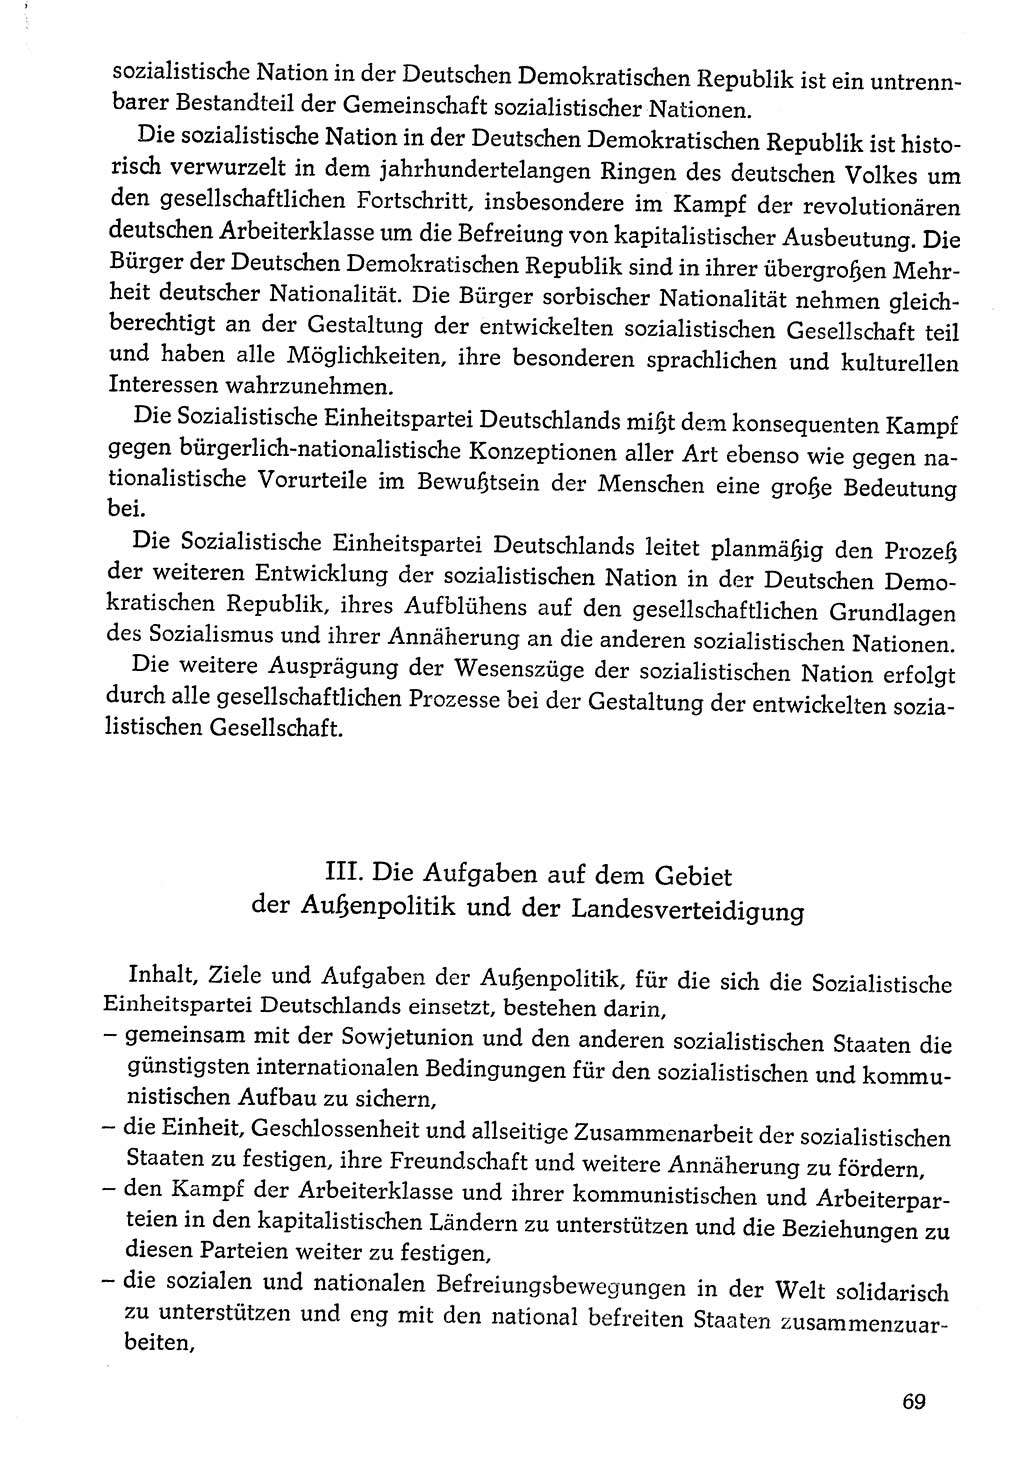 Dokumente der Sozialistischen Einheitspartei Deutschlands (SED) [Deutsche Demokratische Republik (DDR)] 1976-1977, Seite 69 (Dok. SED DDR 1976-1977, S. 69)